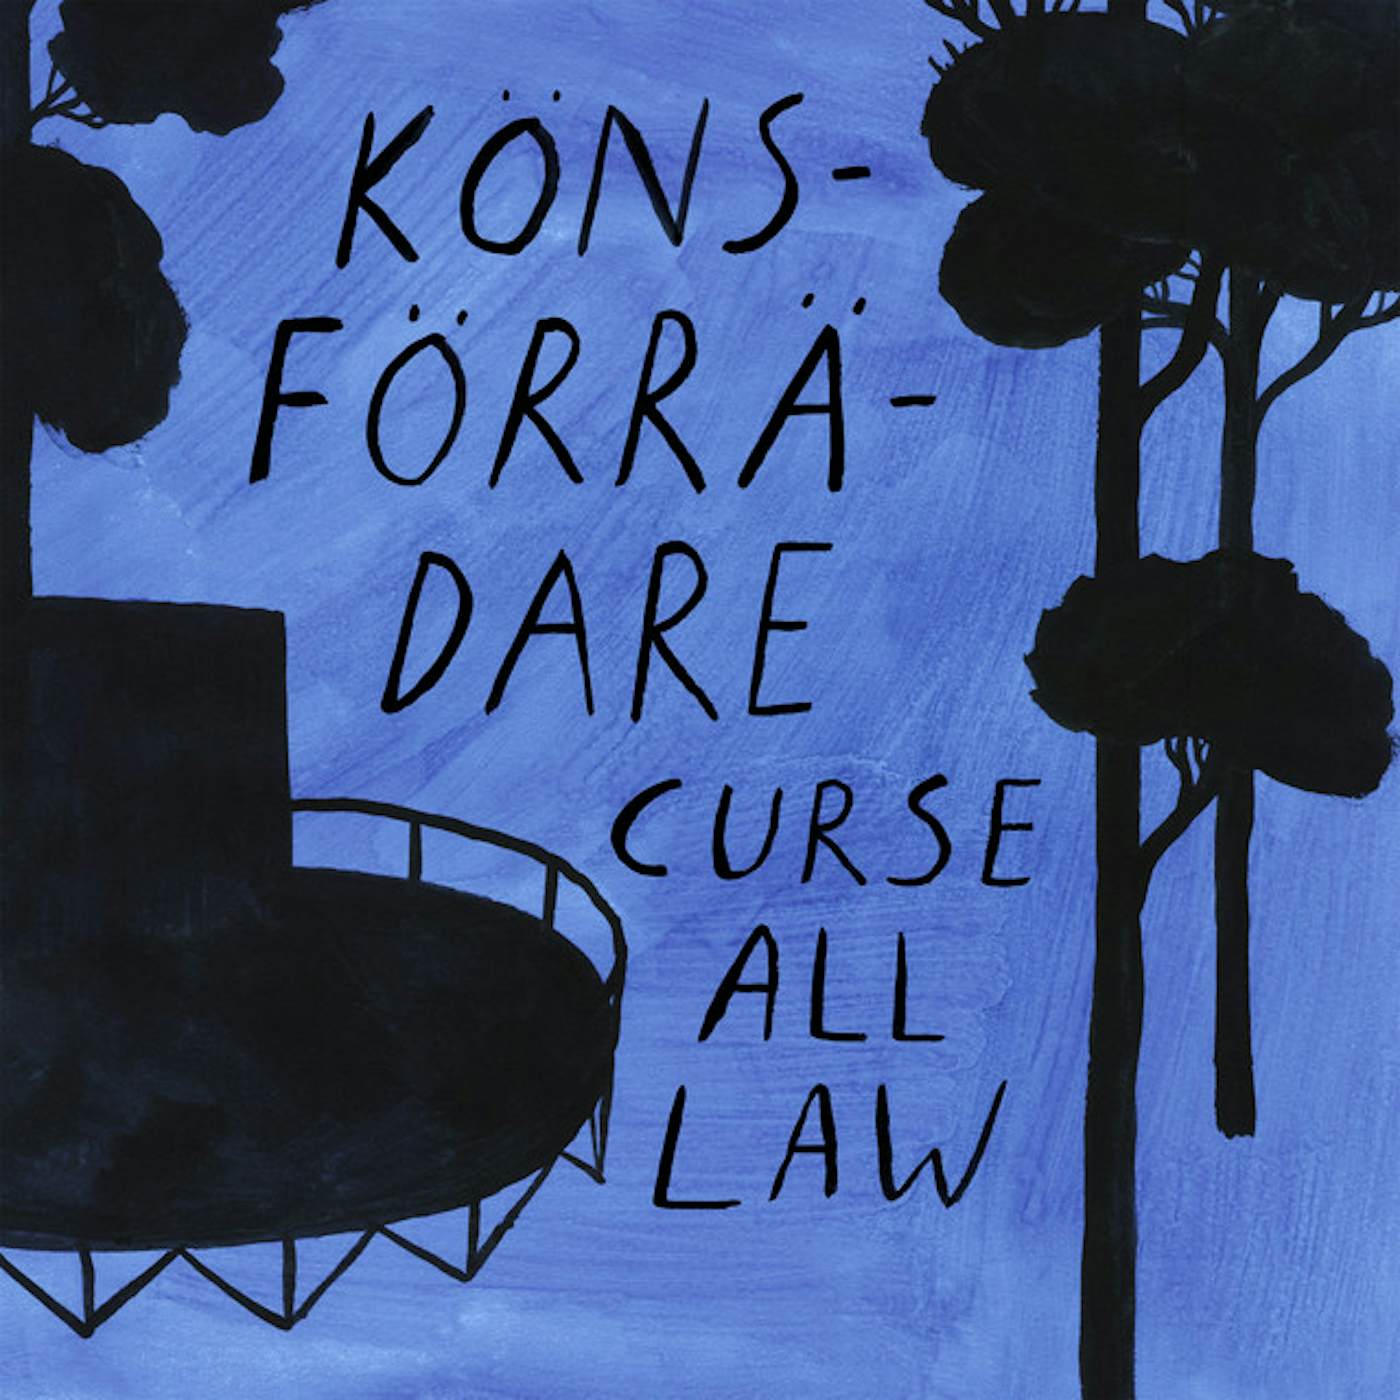 Könsförrädare Curse All Law Vinyl Record